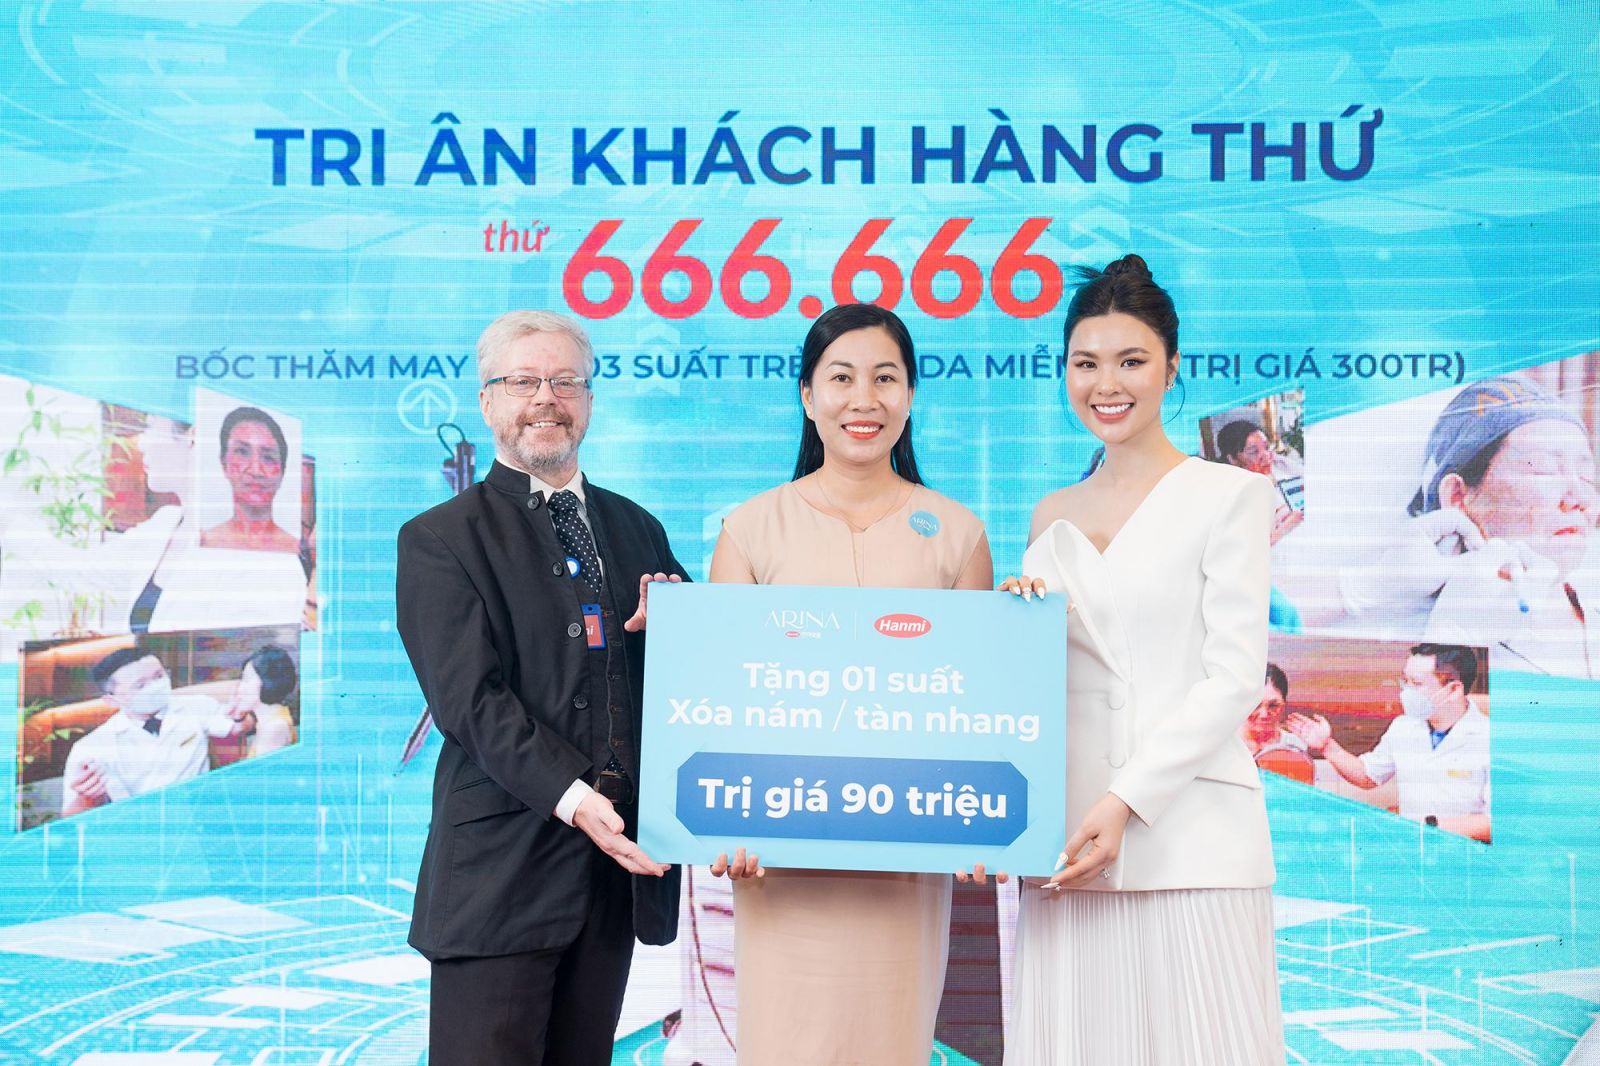 1 suất Xóa nám/tàn nhang trị giá 90.000.000đ đã được trao tặng cho chị Nguyễn Thúy Minh